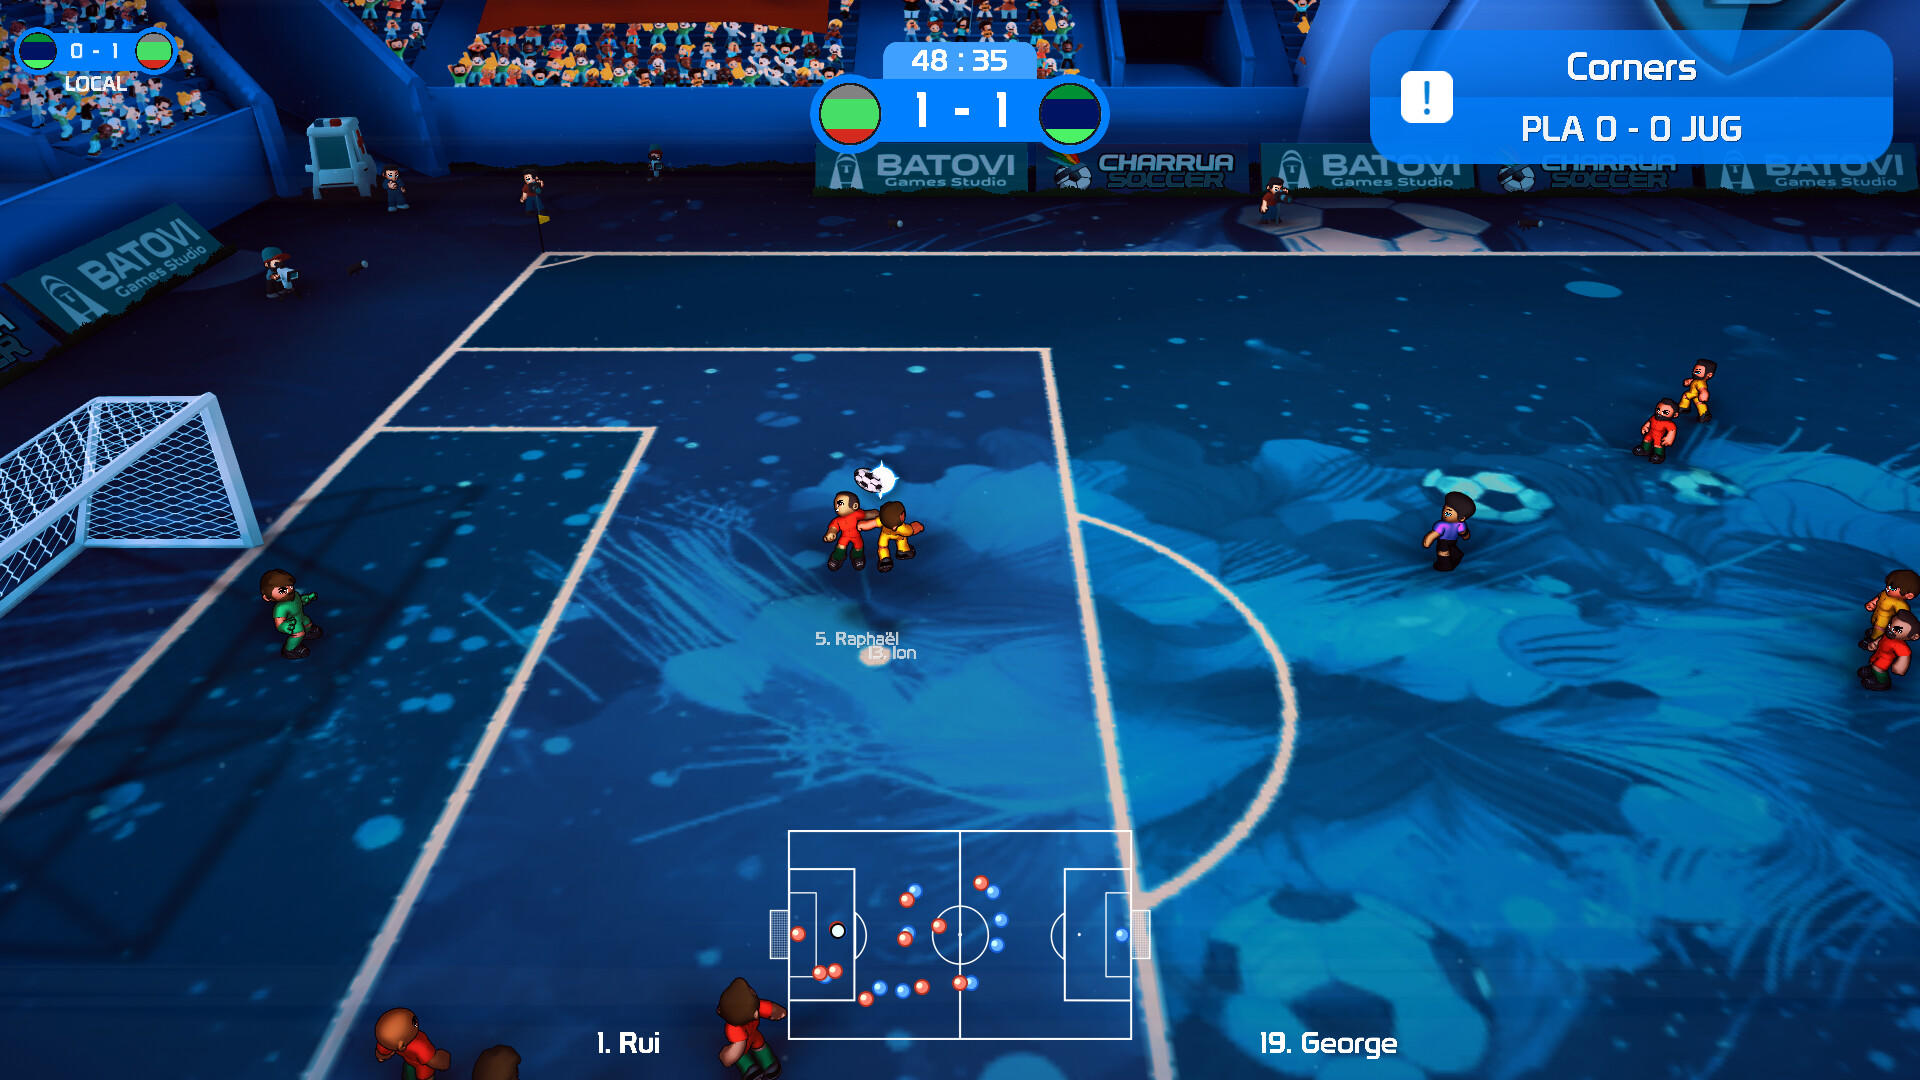 Screenshot 1 of Bola Sepak Charrua - Edisi Cermin 